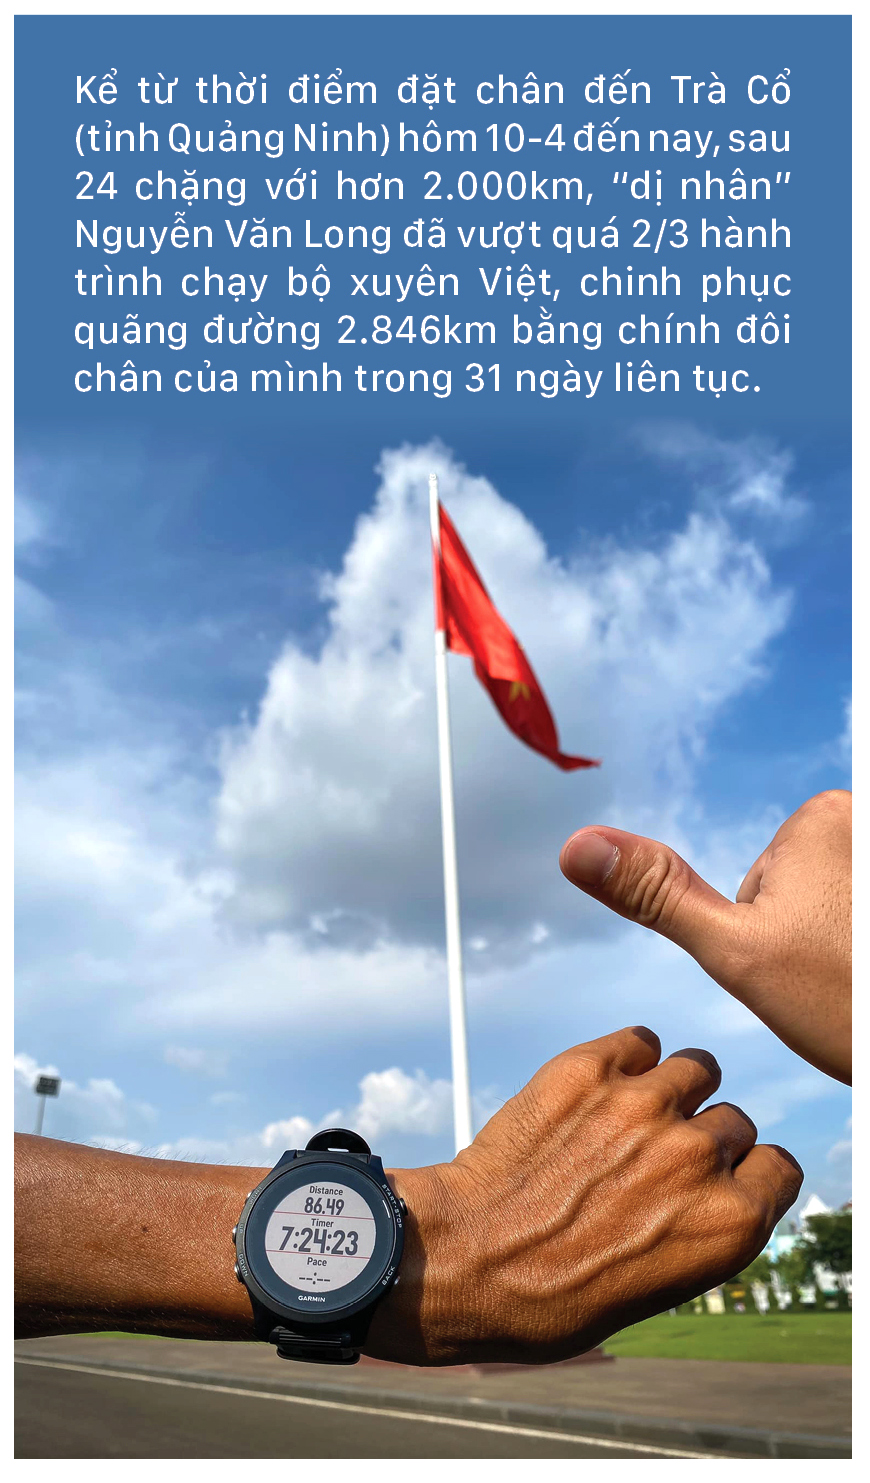 'Dị nhân' marathon Nguyễn Văn Long: 31 ngày chạy bộ xuyên Việt ảnh 1